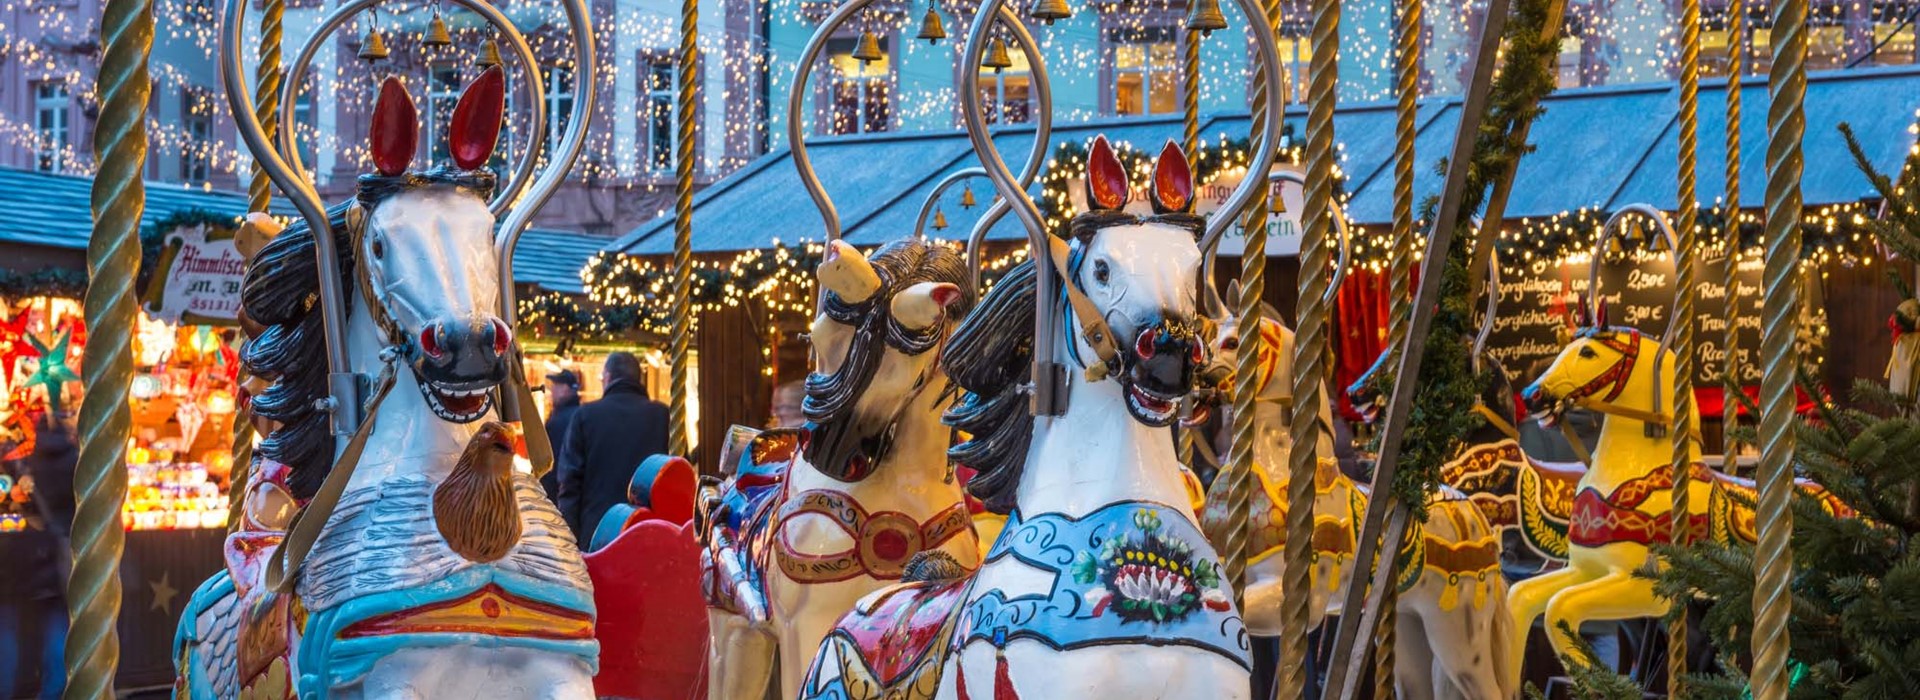 tourhub | Newmarket Holidays | Christmas on the Rhine Cruise | 98489